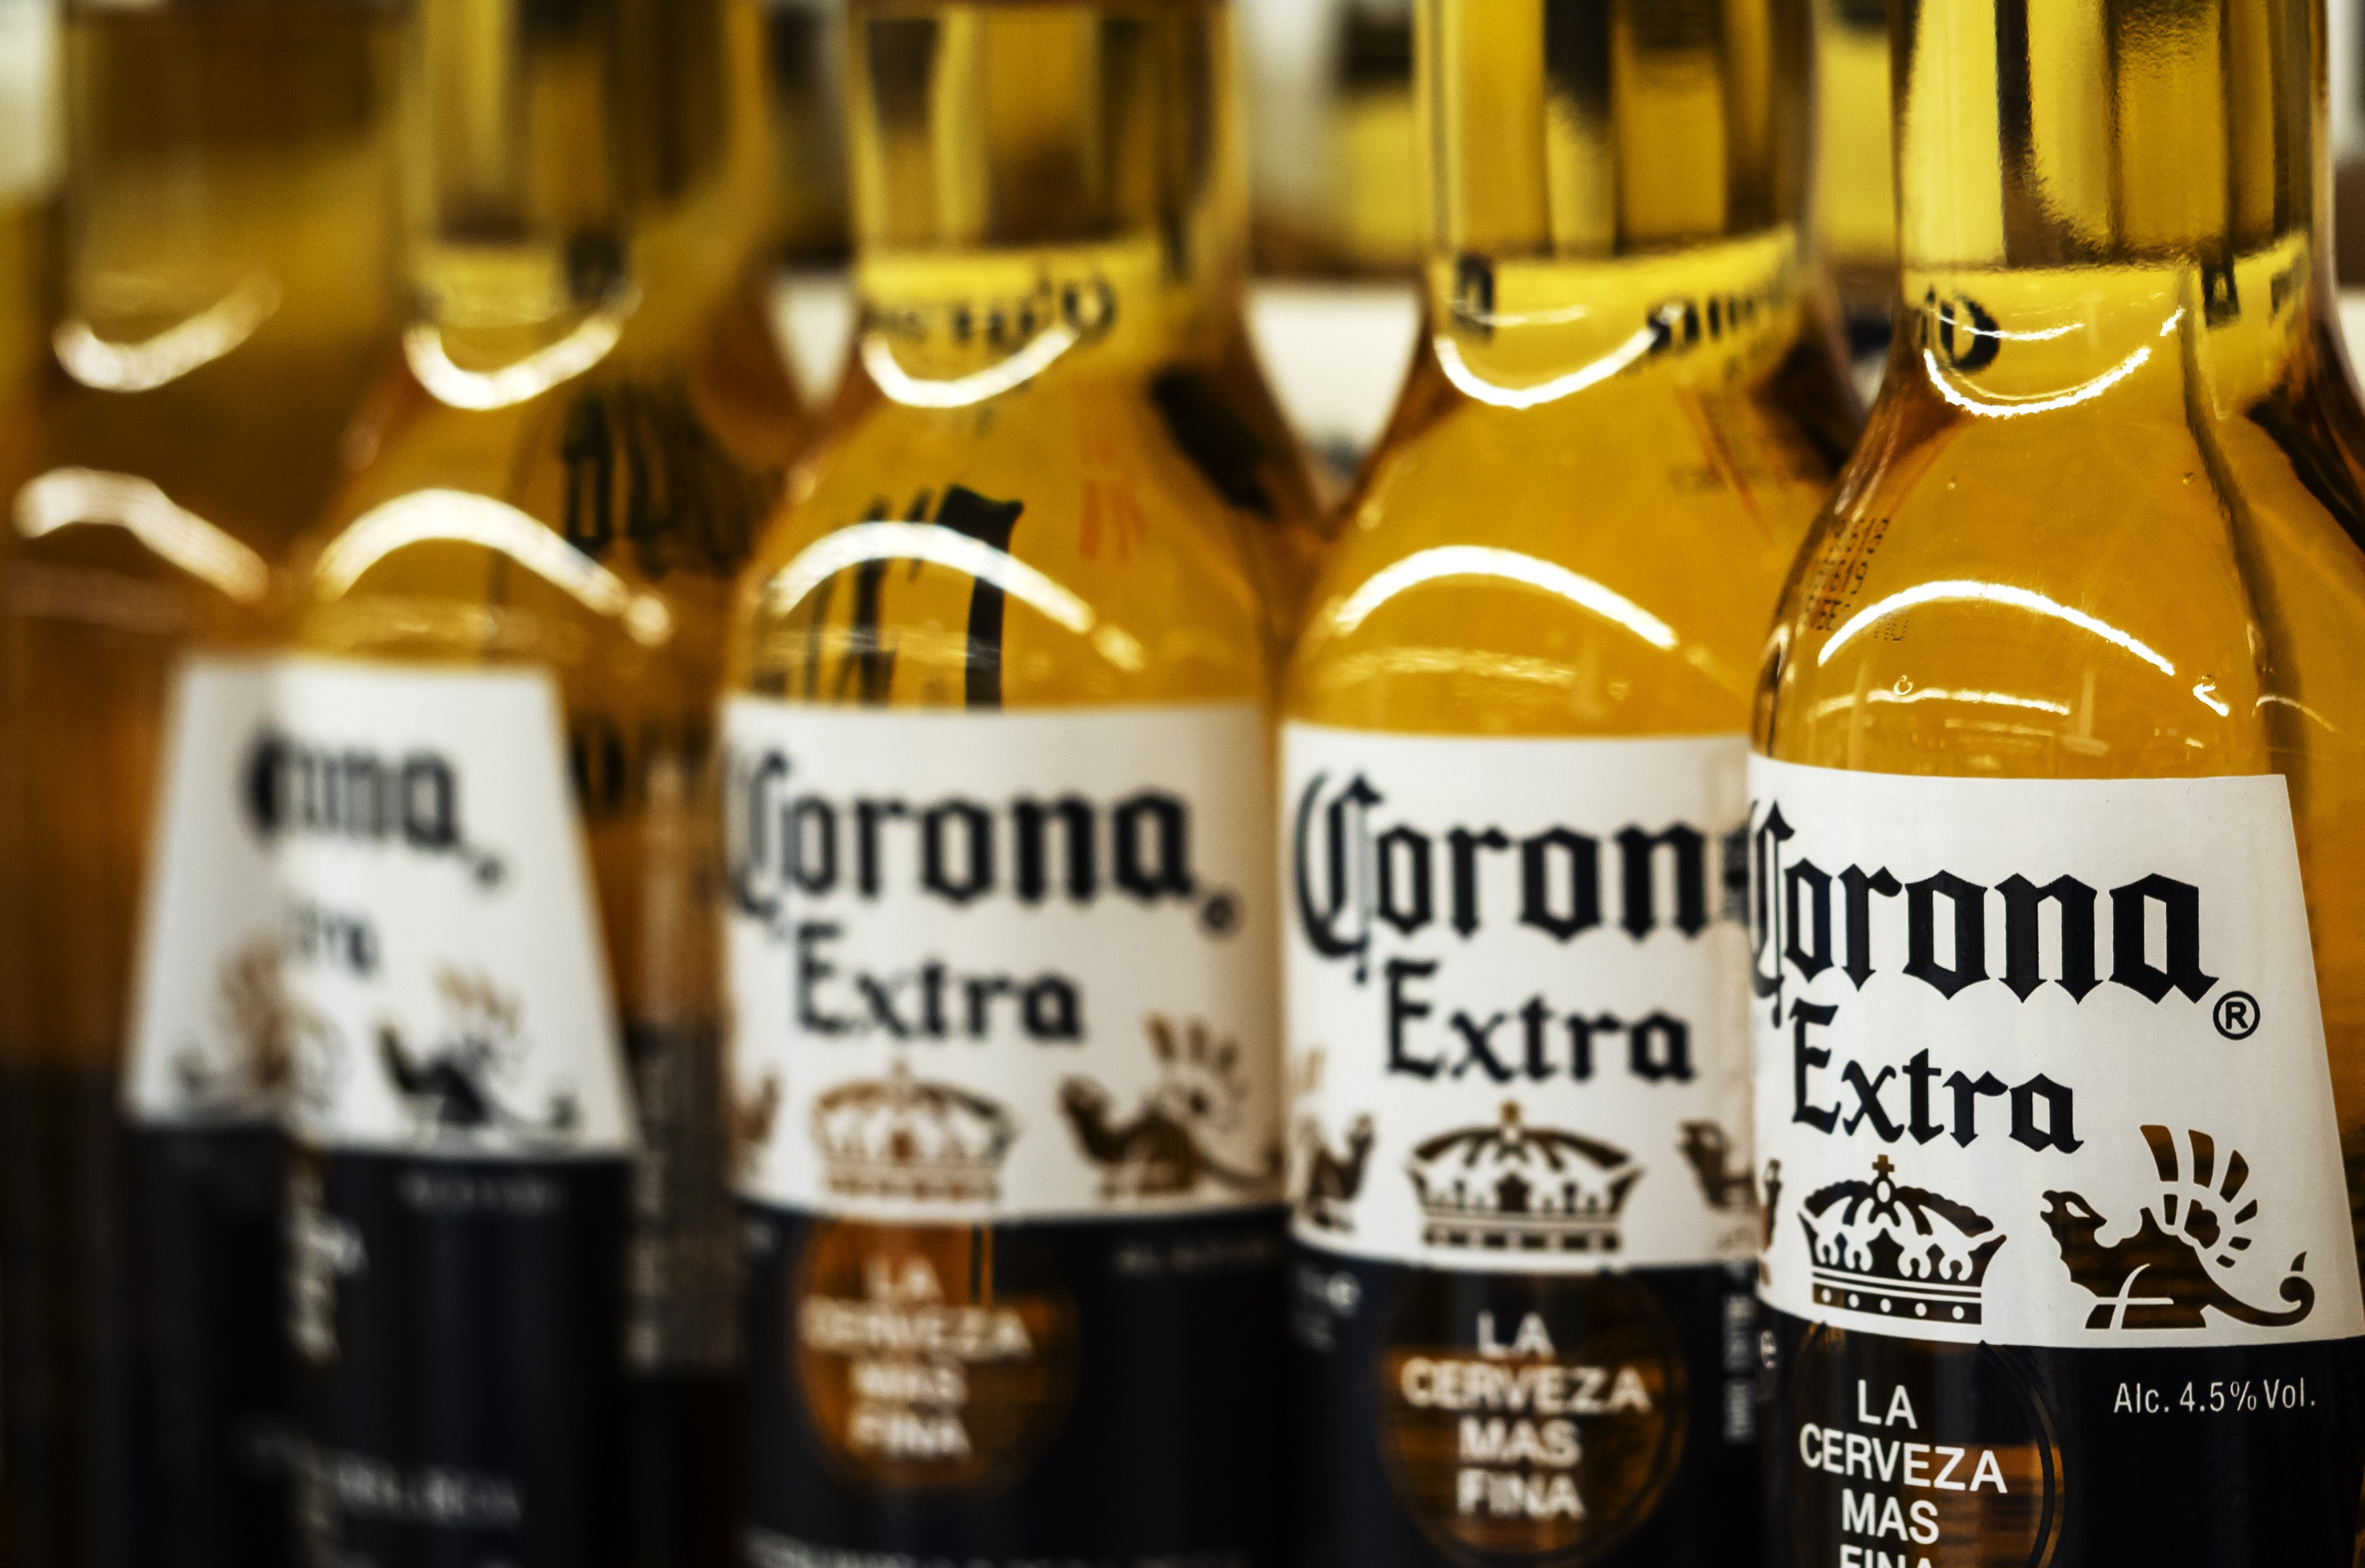 38% dos americanos evitam cerveja Corona por coronavírus, aponta pesquisa (Foto: Getty Images)